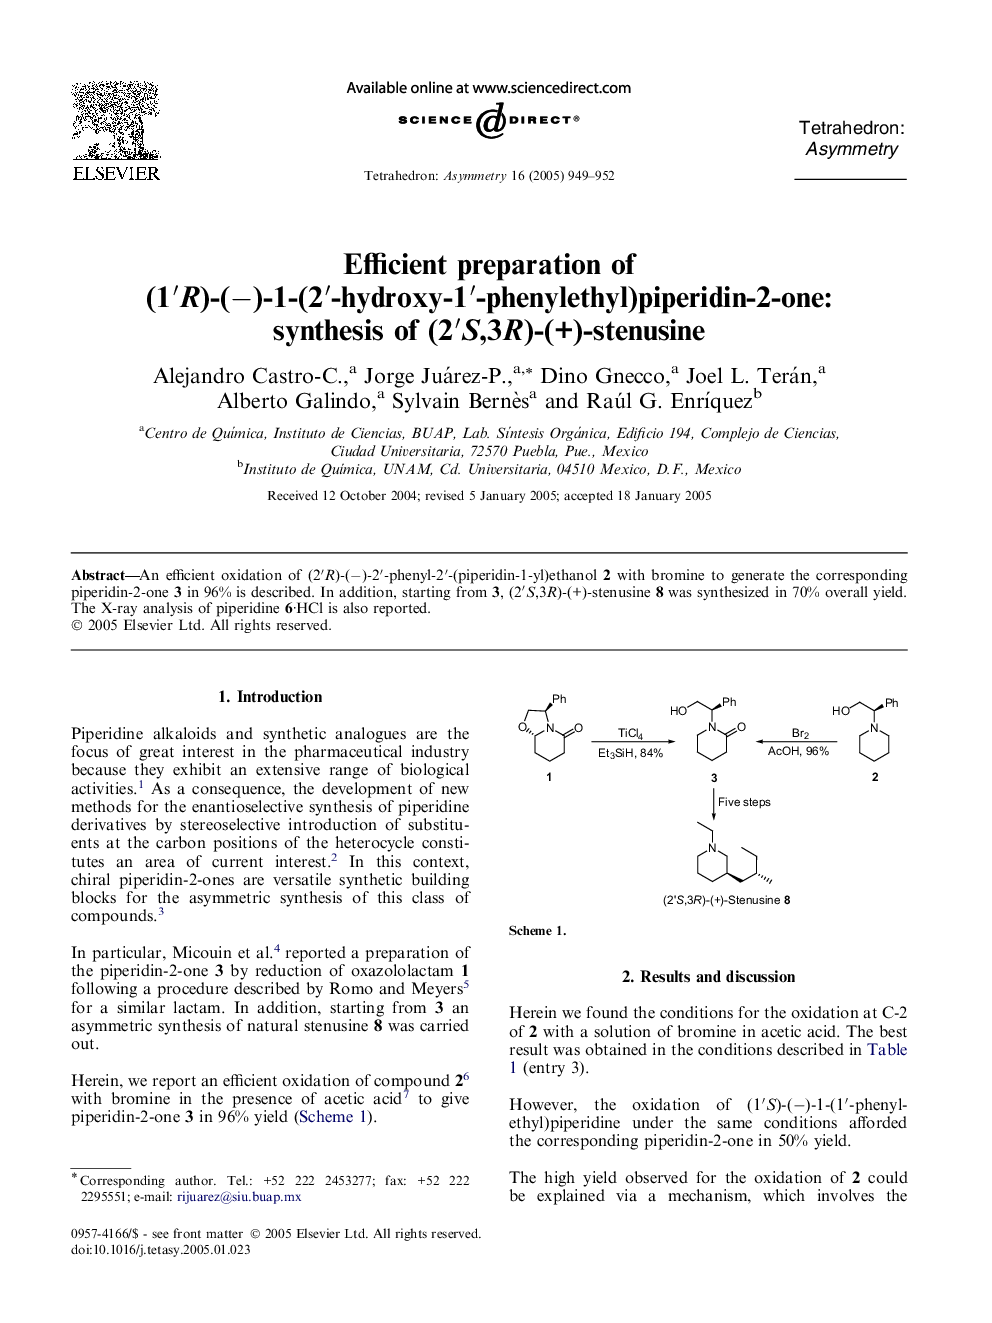 Efficient preparation of (1â²R)-(â)-1-(2â²-hydroxy-1â²-phenylethyl)piperidin-2-one: synthesis of (2â²S,3R)-(+)-stenusine